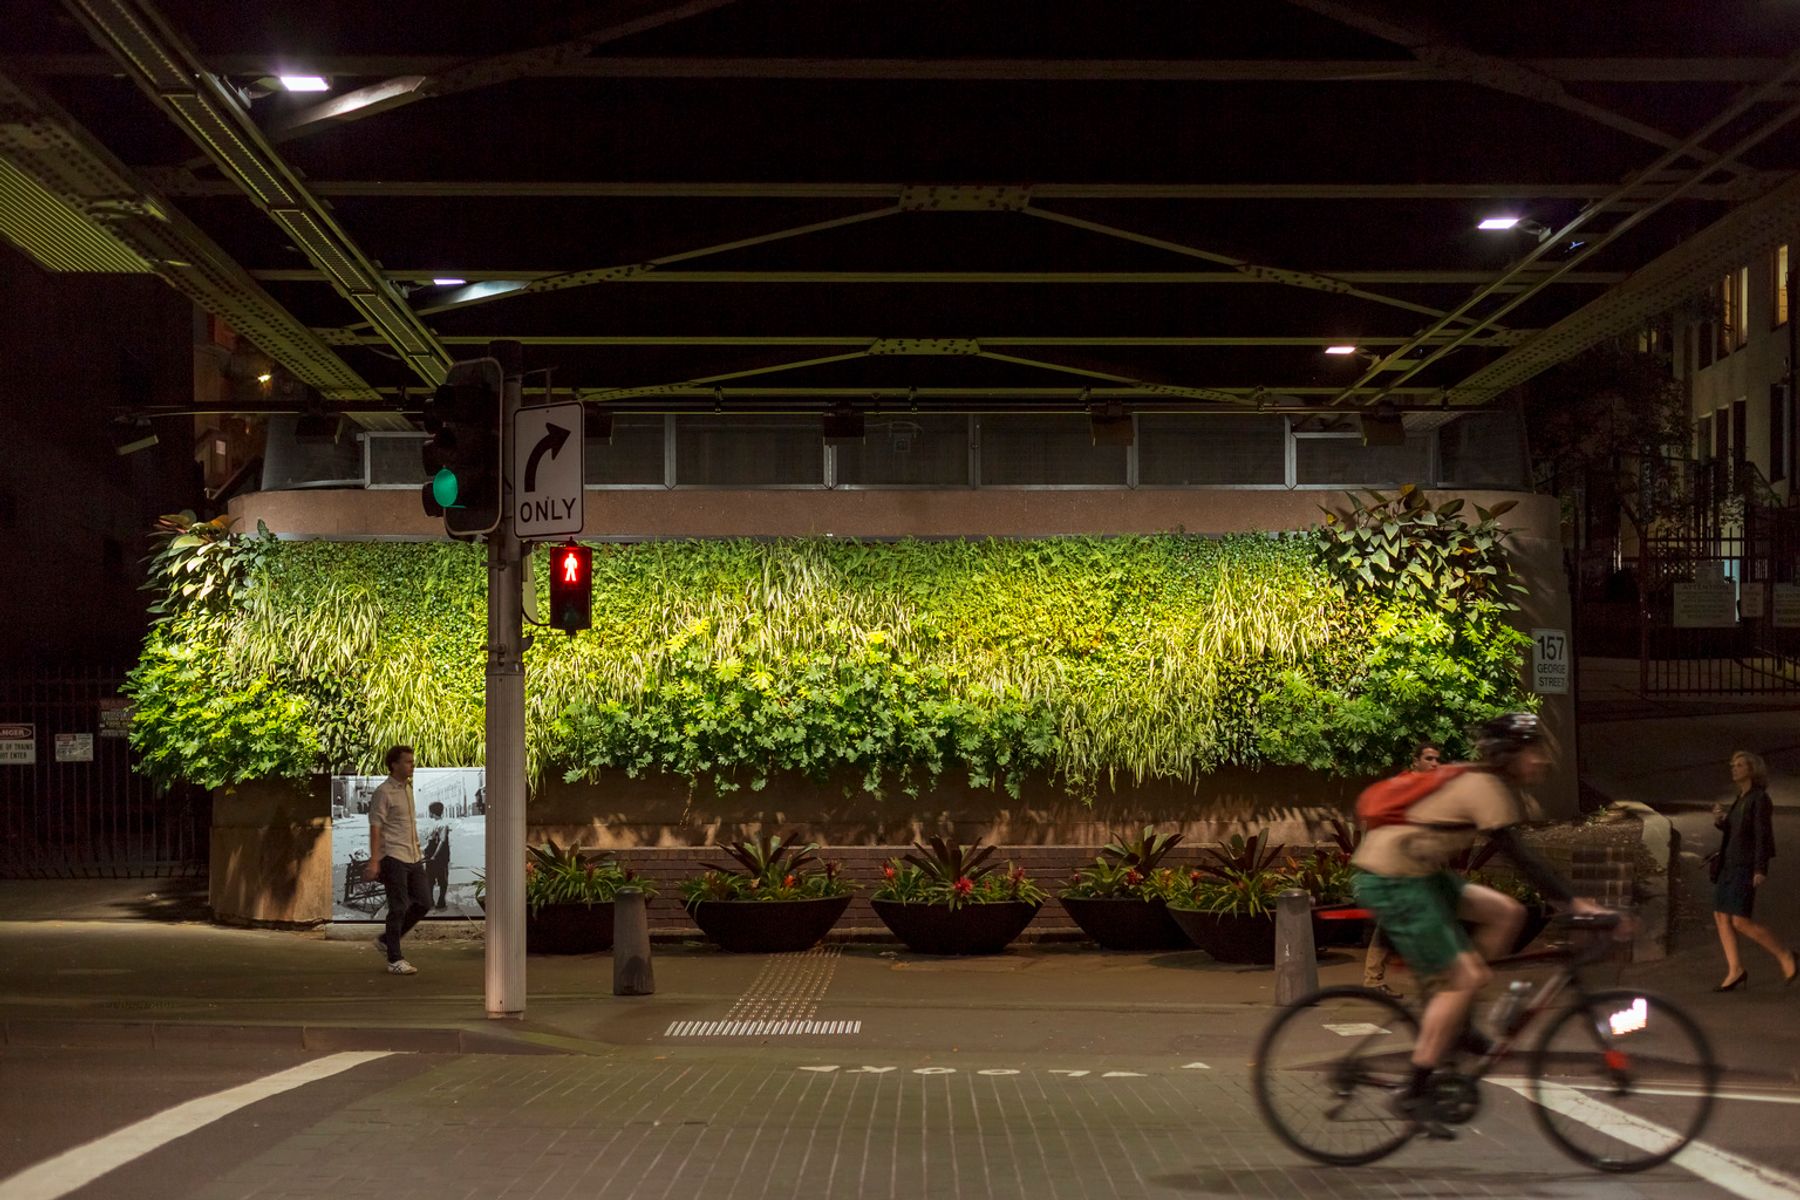 Green Wall 140 George Street, Sydney. Lichtplanung: Electrolight, Sydney. Fotografie: Jackie Chan, Sydney.